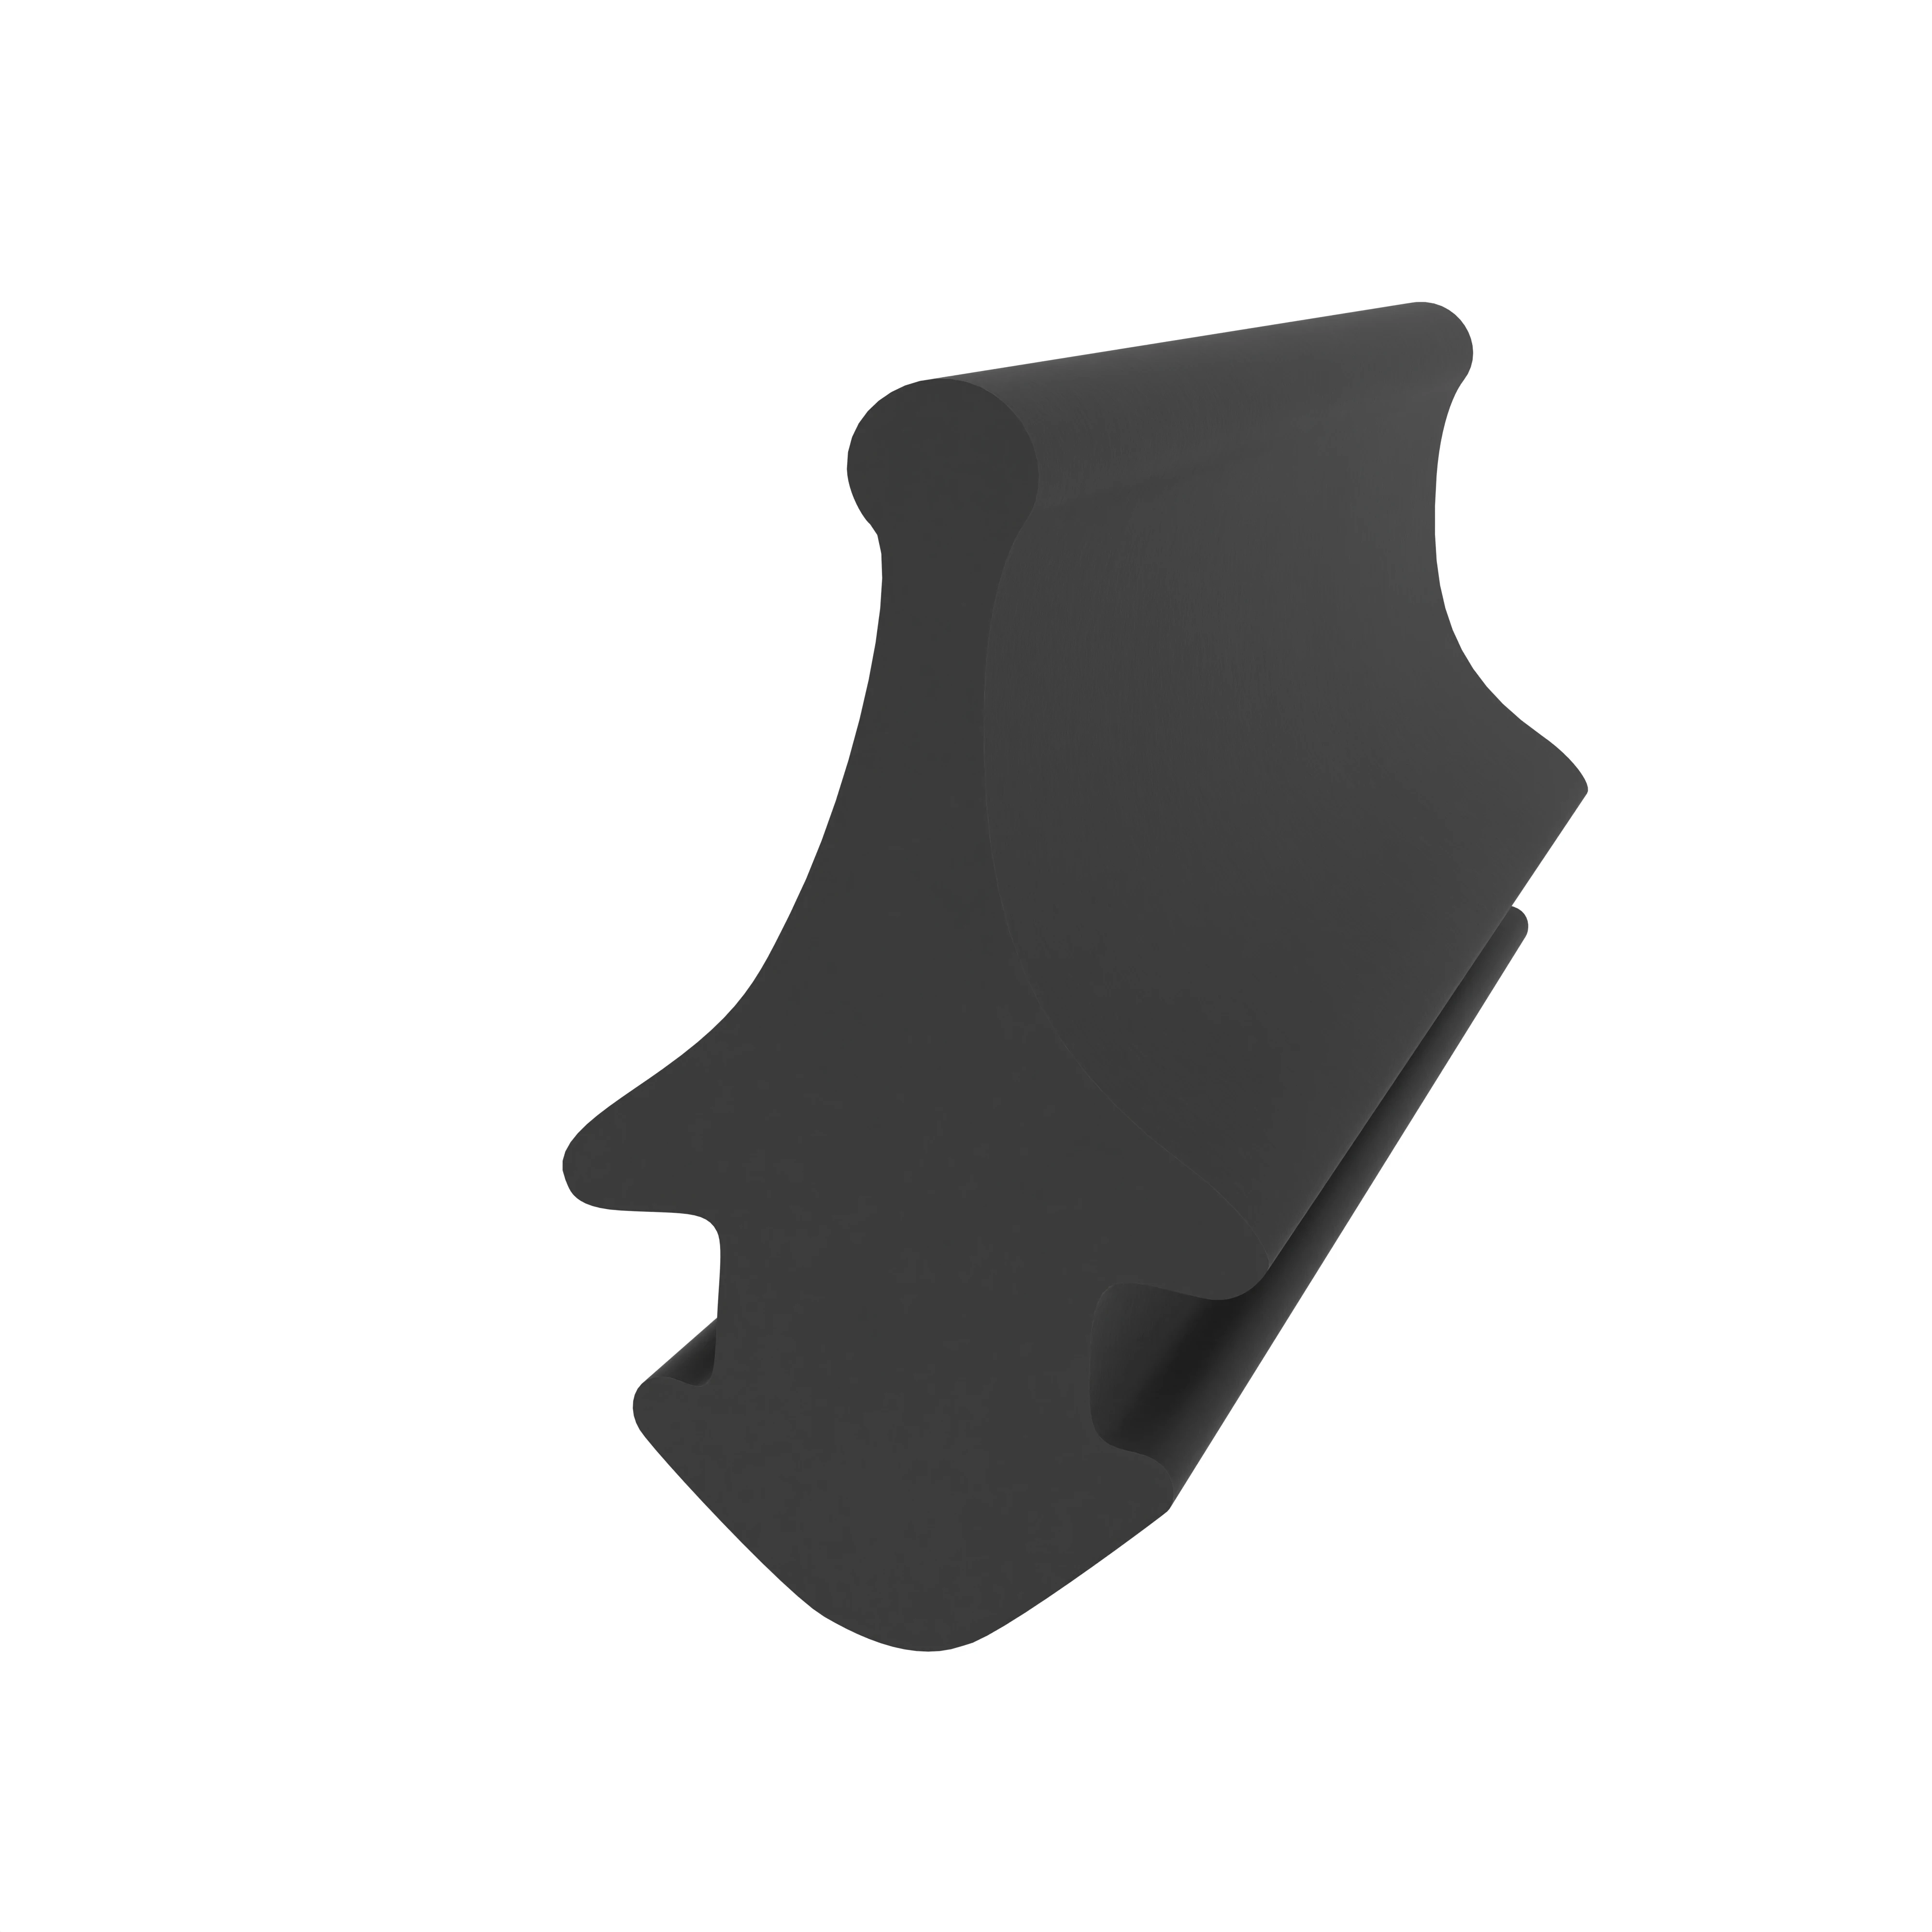 Anschlagdichtung mit Lippe und profiliertem Fuß | 9 mm Höhe | Farbe: schwarz 